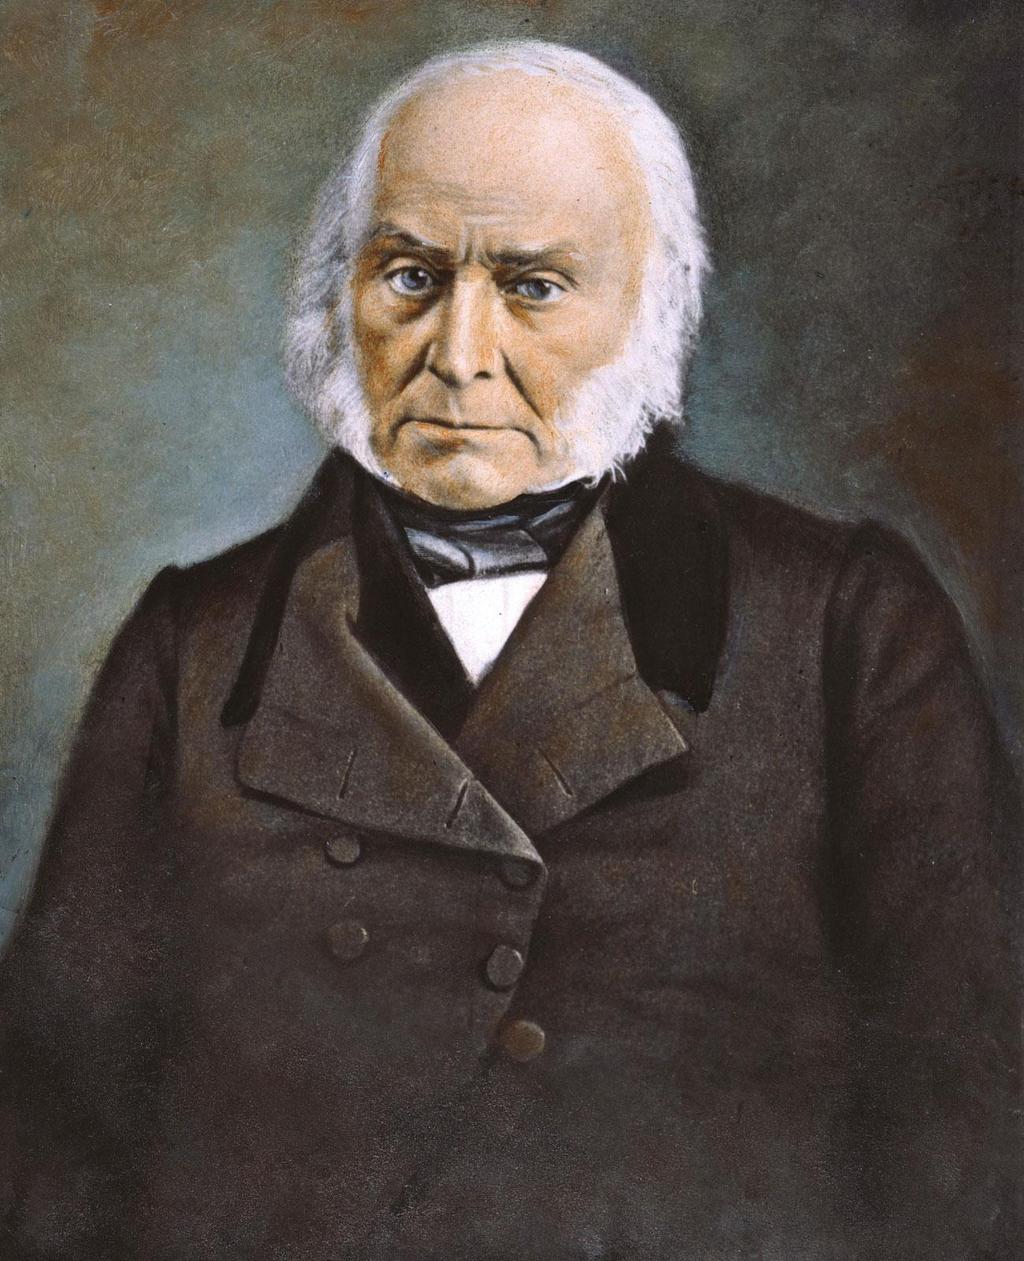 John Quincy Adams a. Democratic-Republican b.